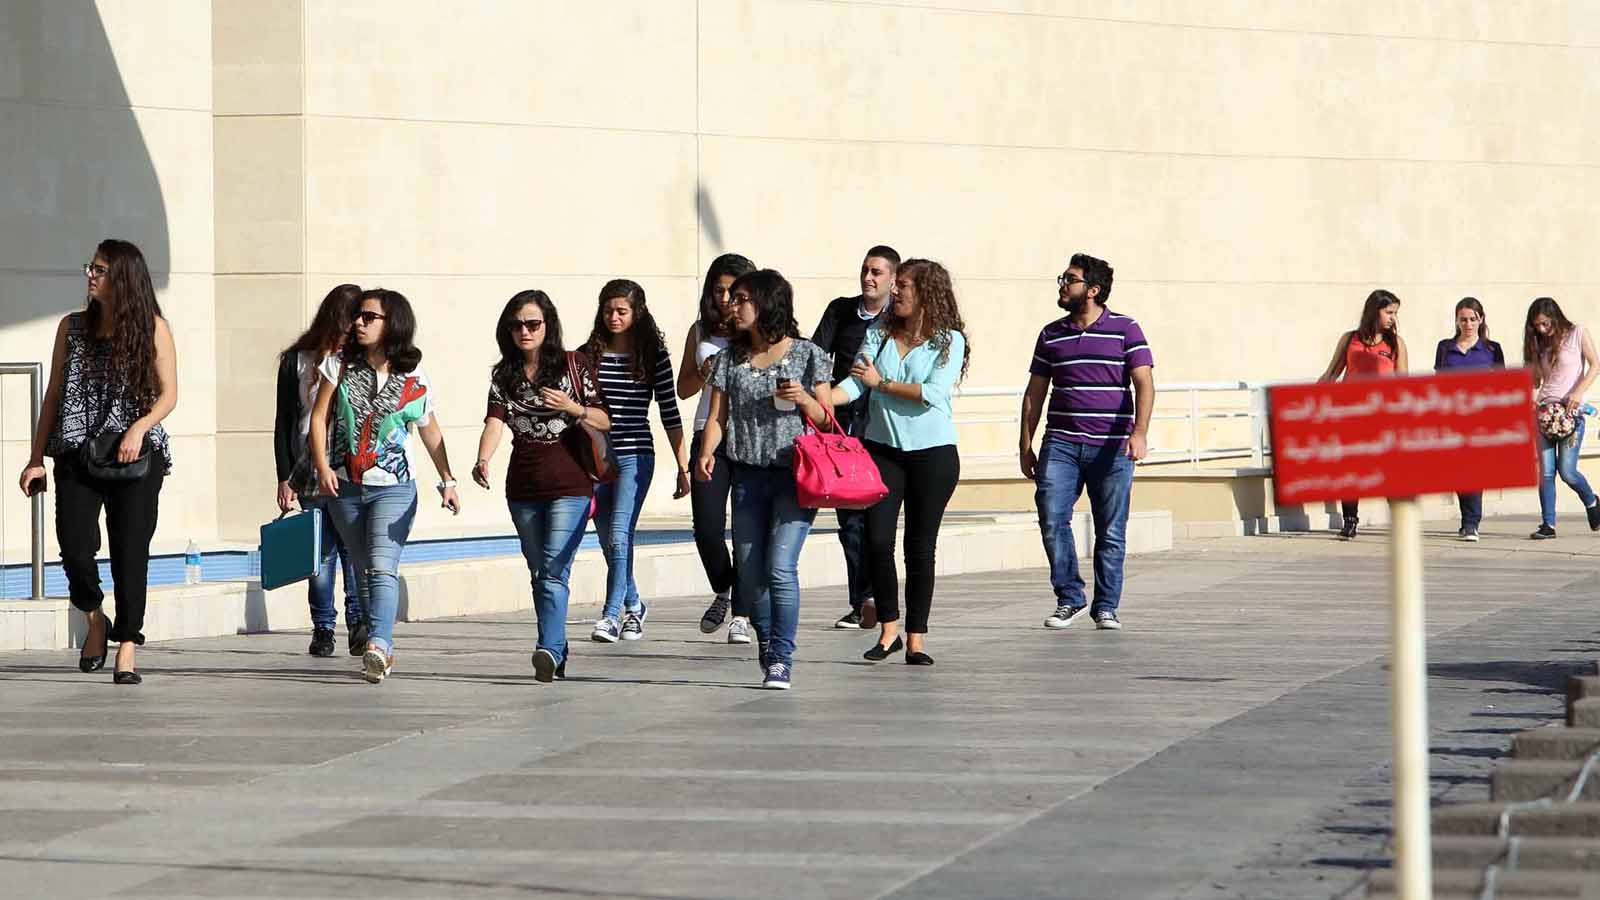 "اللبنانية": طلاب ادارة الأعمال يعودن الاثنين.. هل يُعاقب المعتدون؟